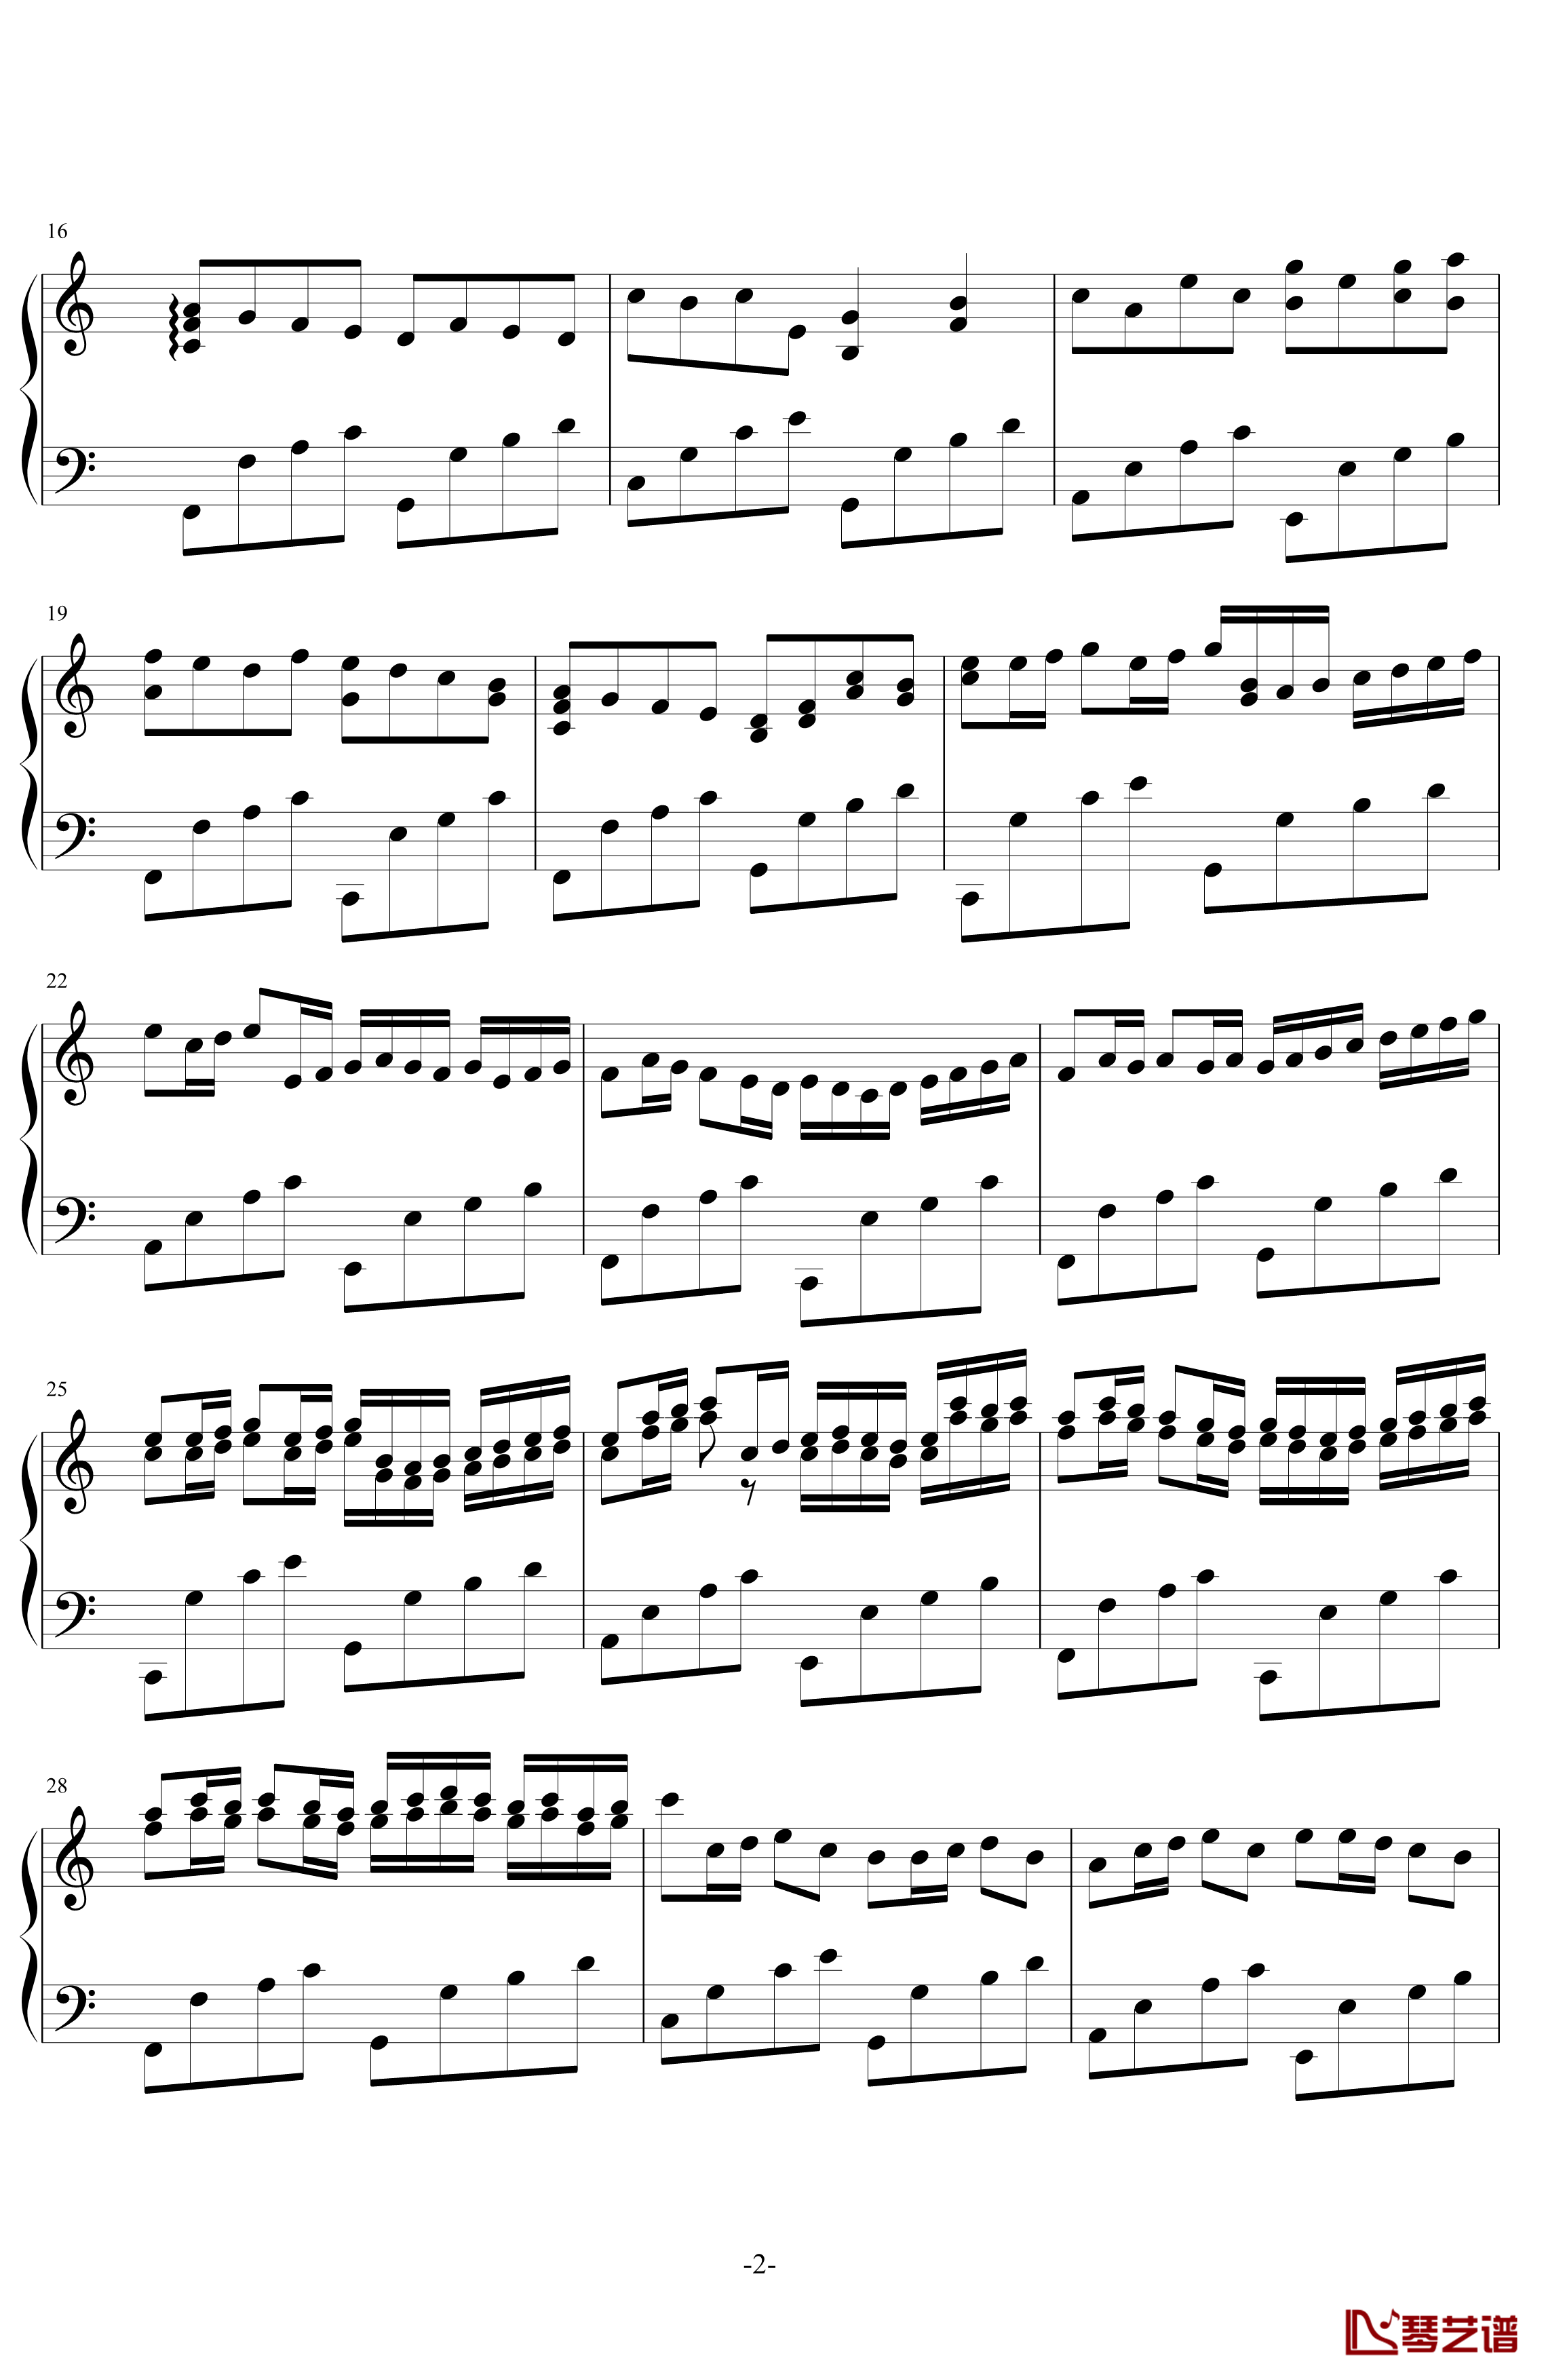 卡农钢琴谱-帕赫贝尔-Pachelbel-钢琴版摇滚2